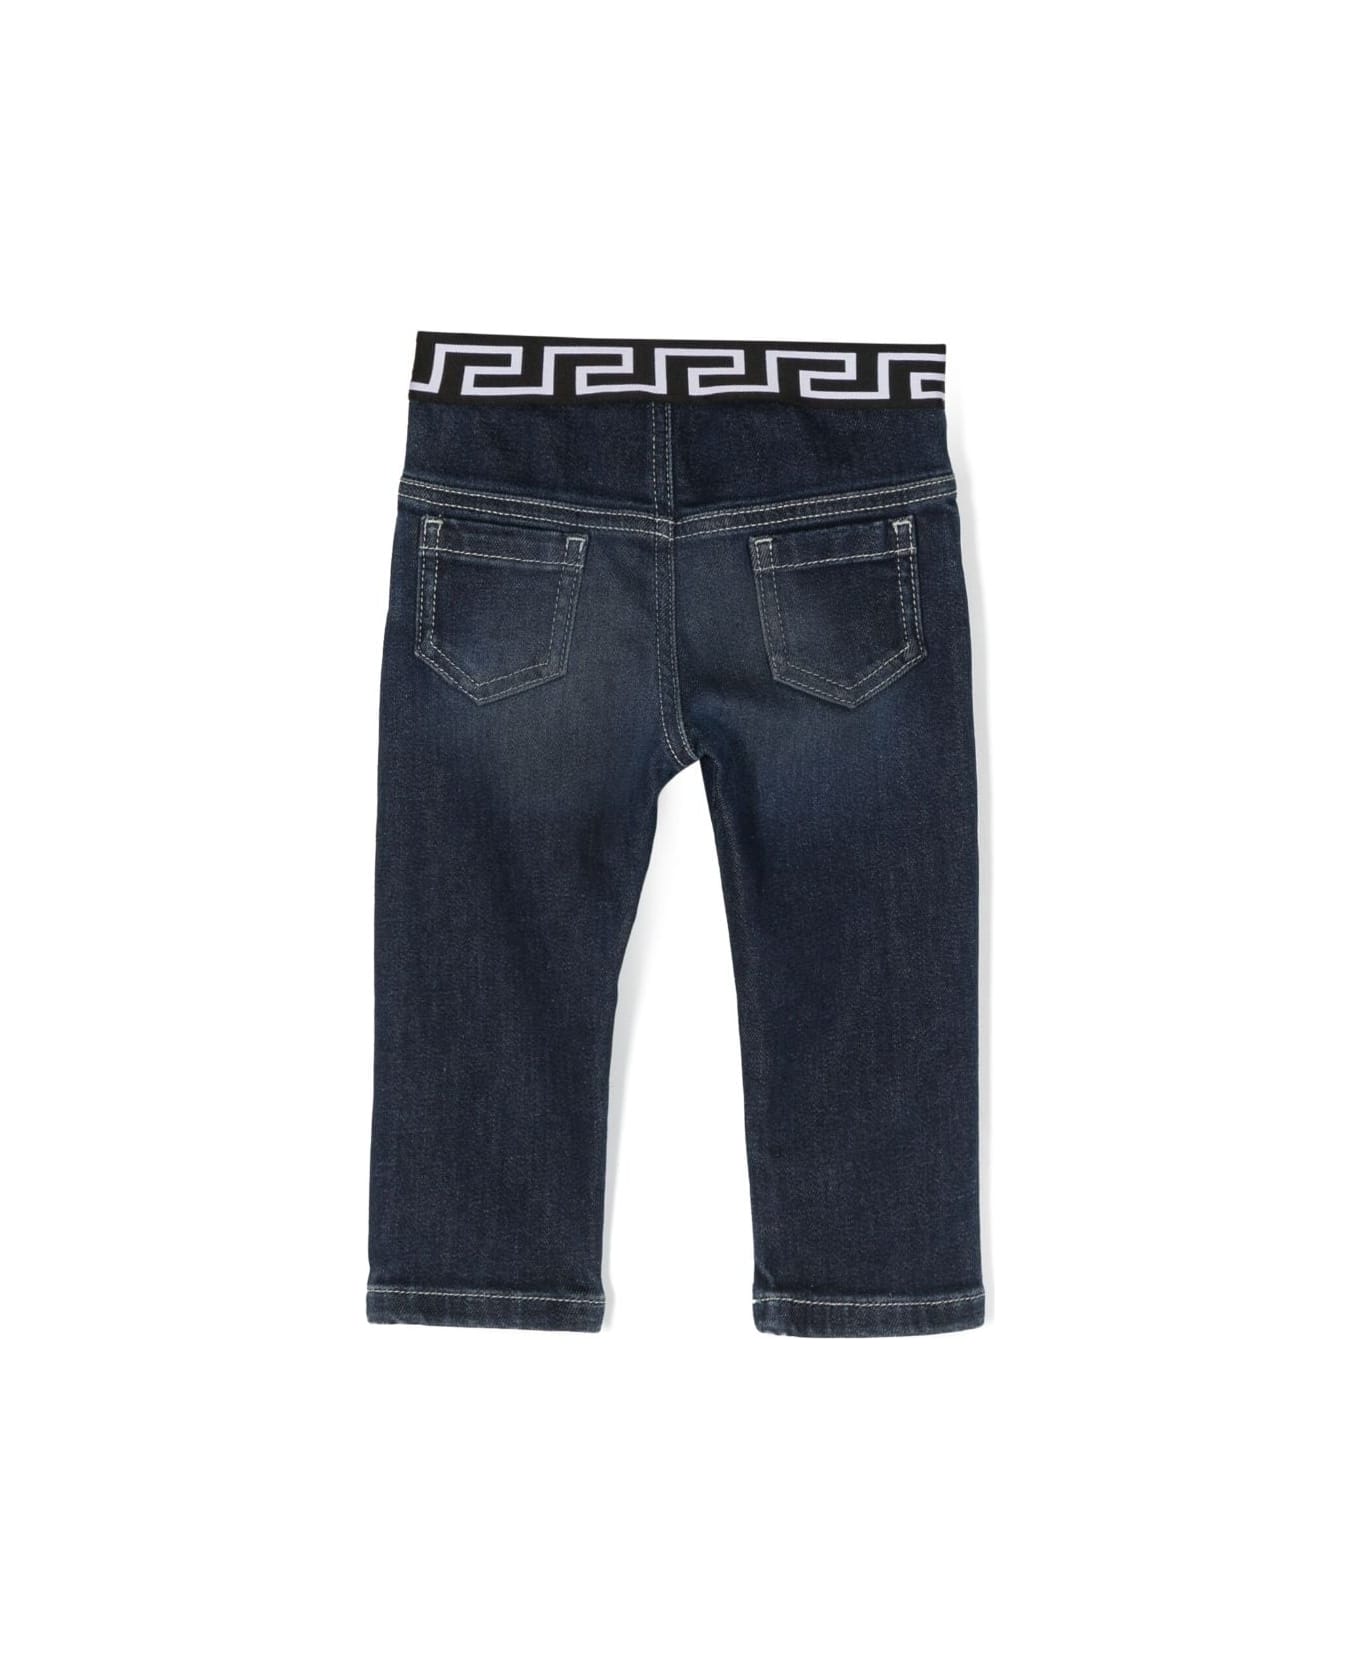 Versace Pantaloni Blu In Demin Di Cotone Stretch Baby Boy - Blu